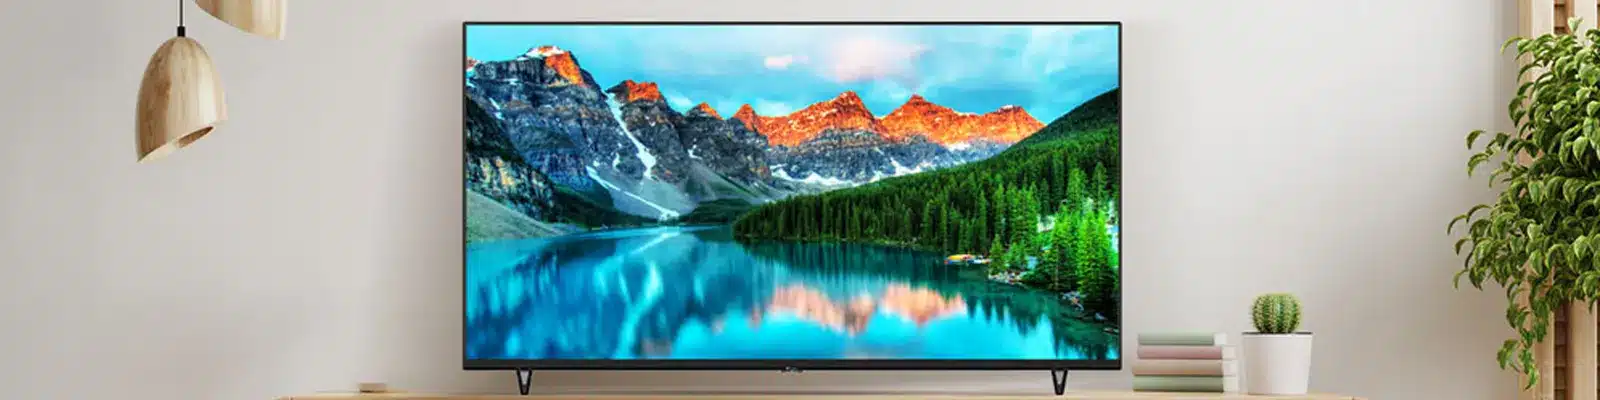 تلویزیون ال ای دی هوشمند سونی KD-55X7000G سایز 55